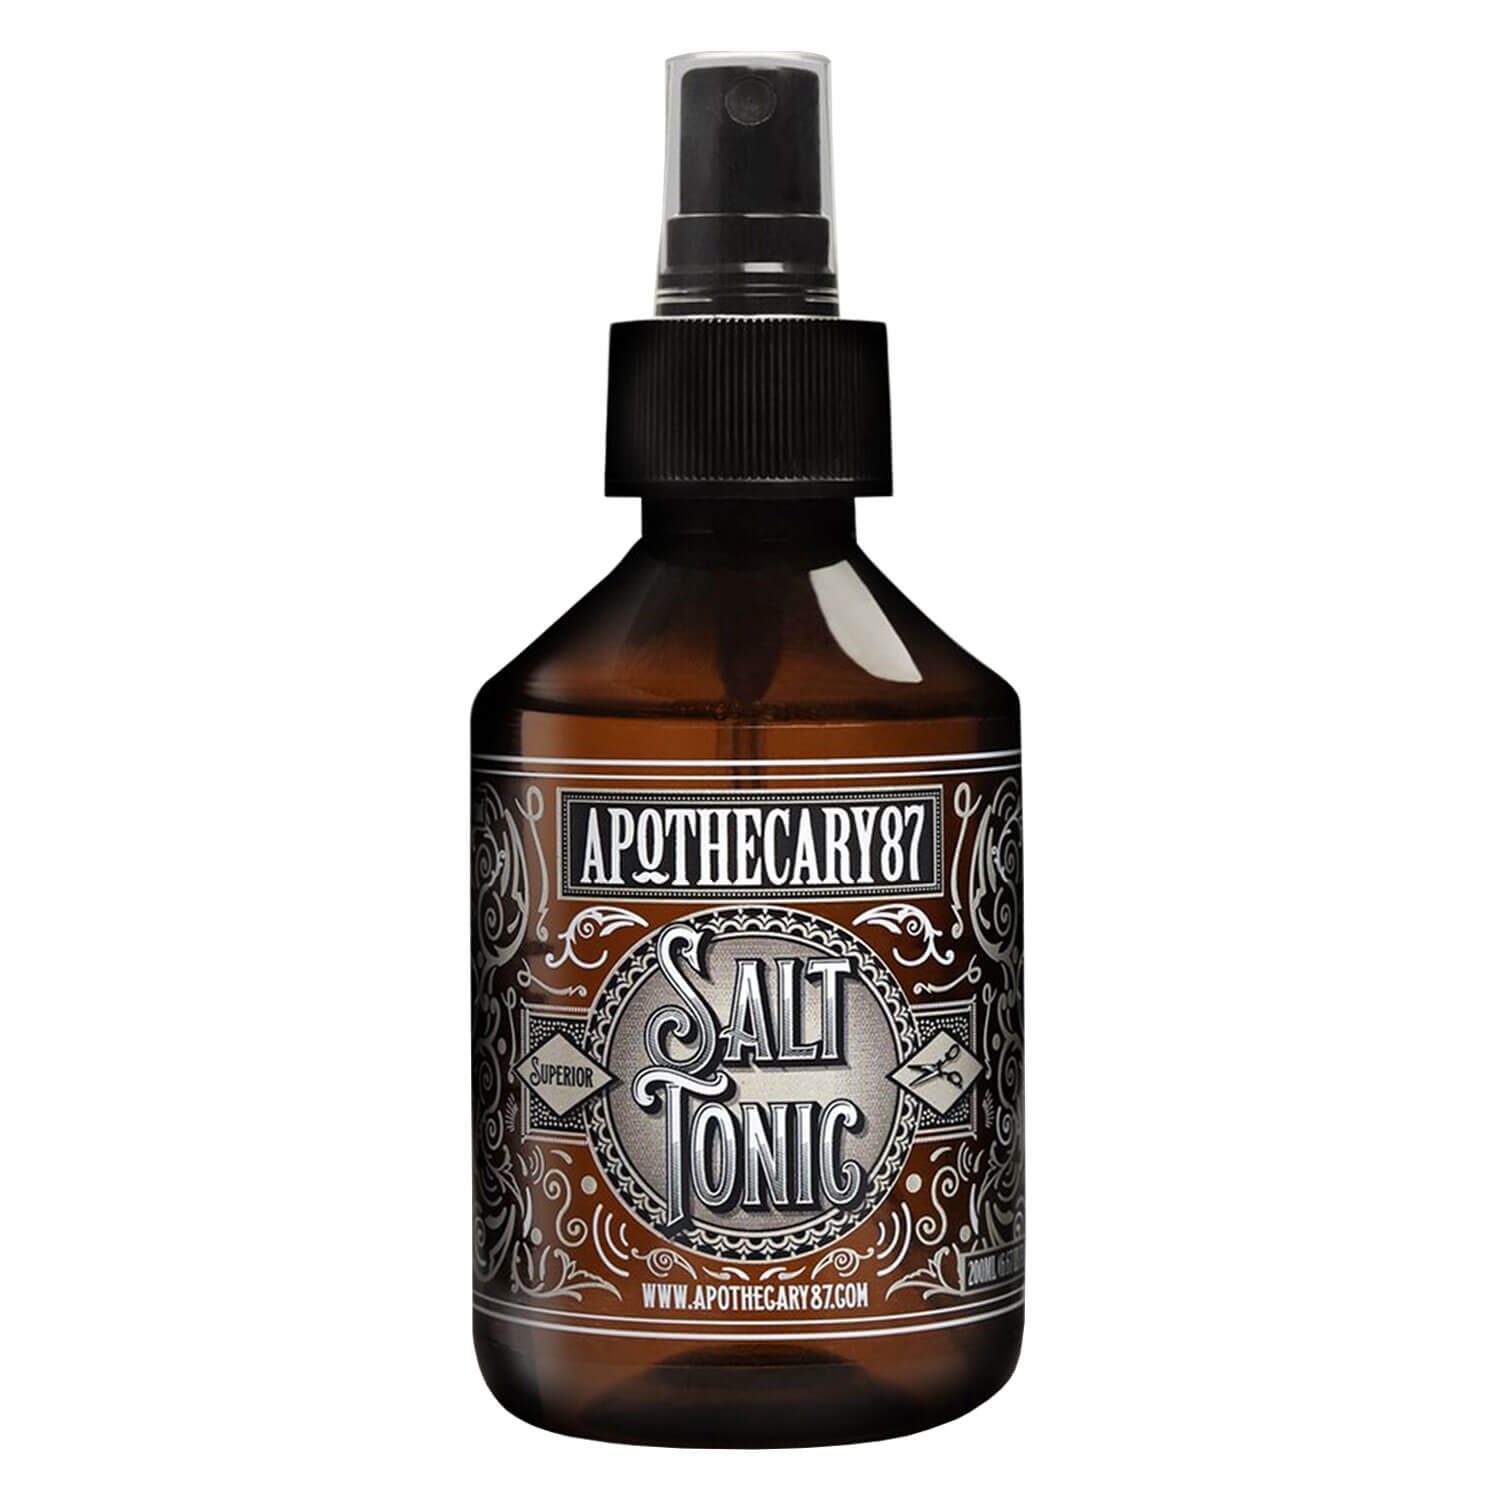 Produktbild von Apothecary87 Grooming - Salt Tonic